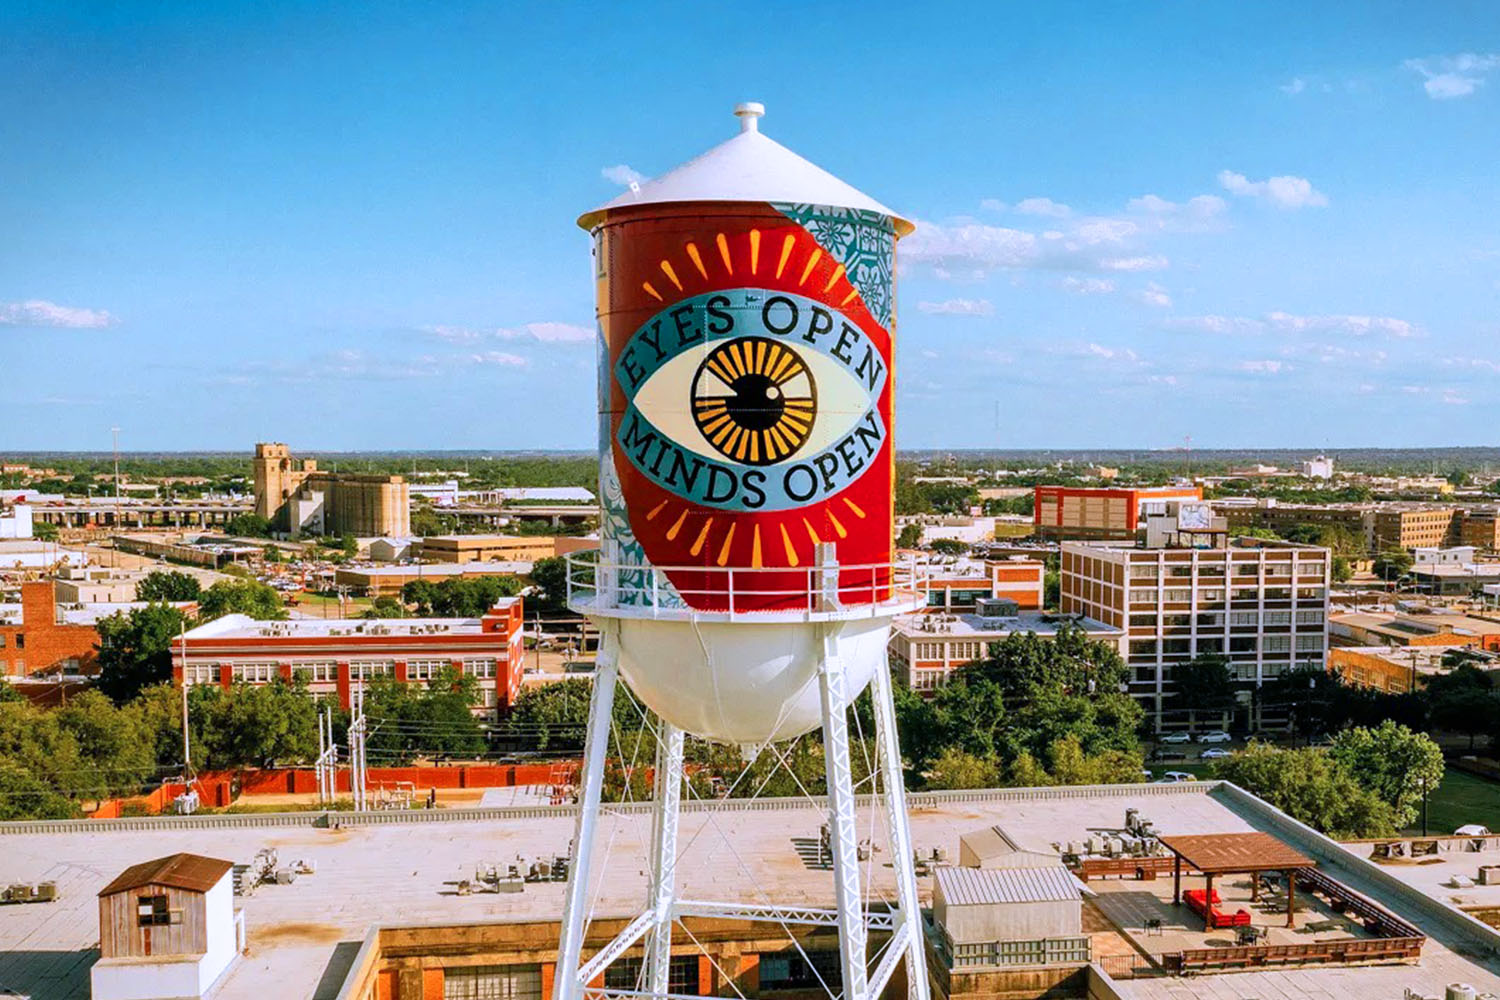 Shepard Fairey's mural "Eyes Open, Minds Open" in Dallas